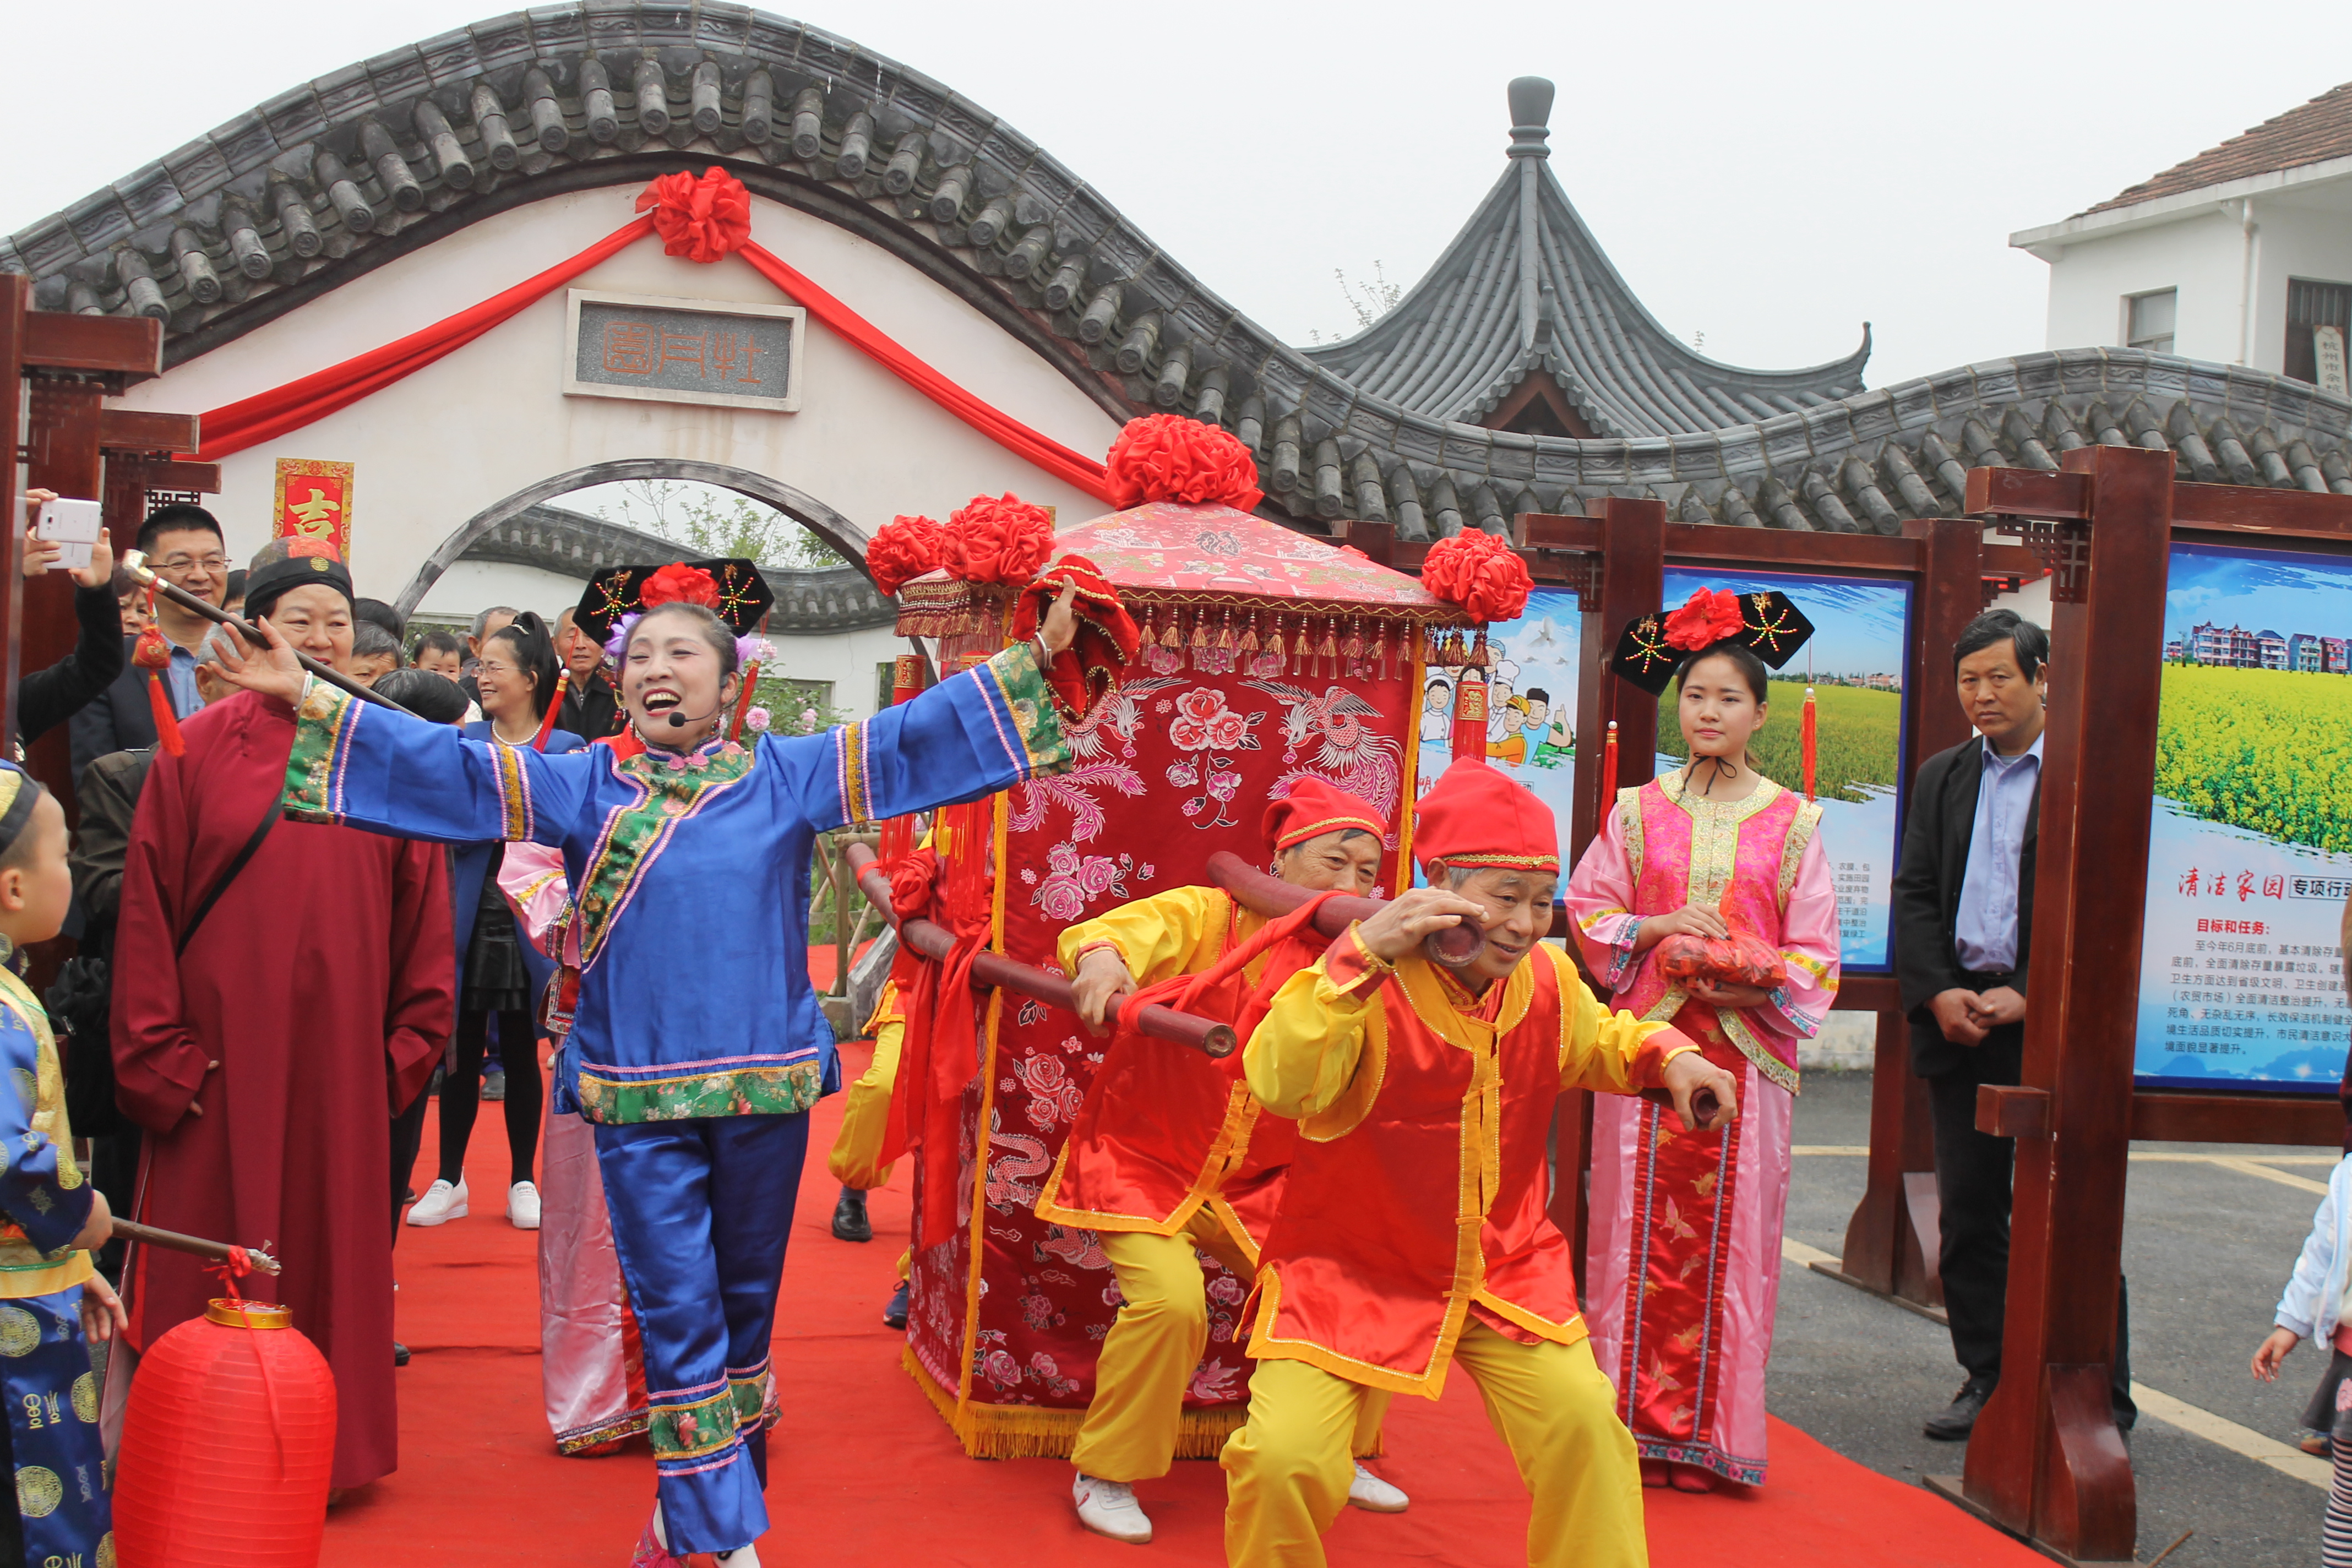 余杭区仁和街道普宁村文化礼堂展示中华传统婚礼仪式.JPG